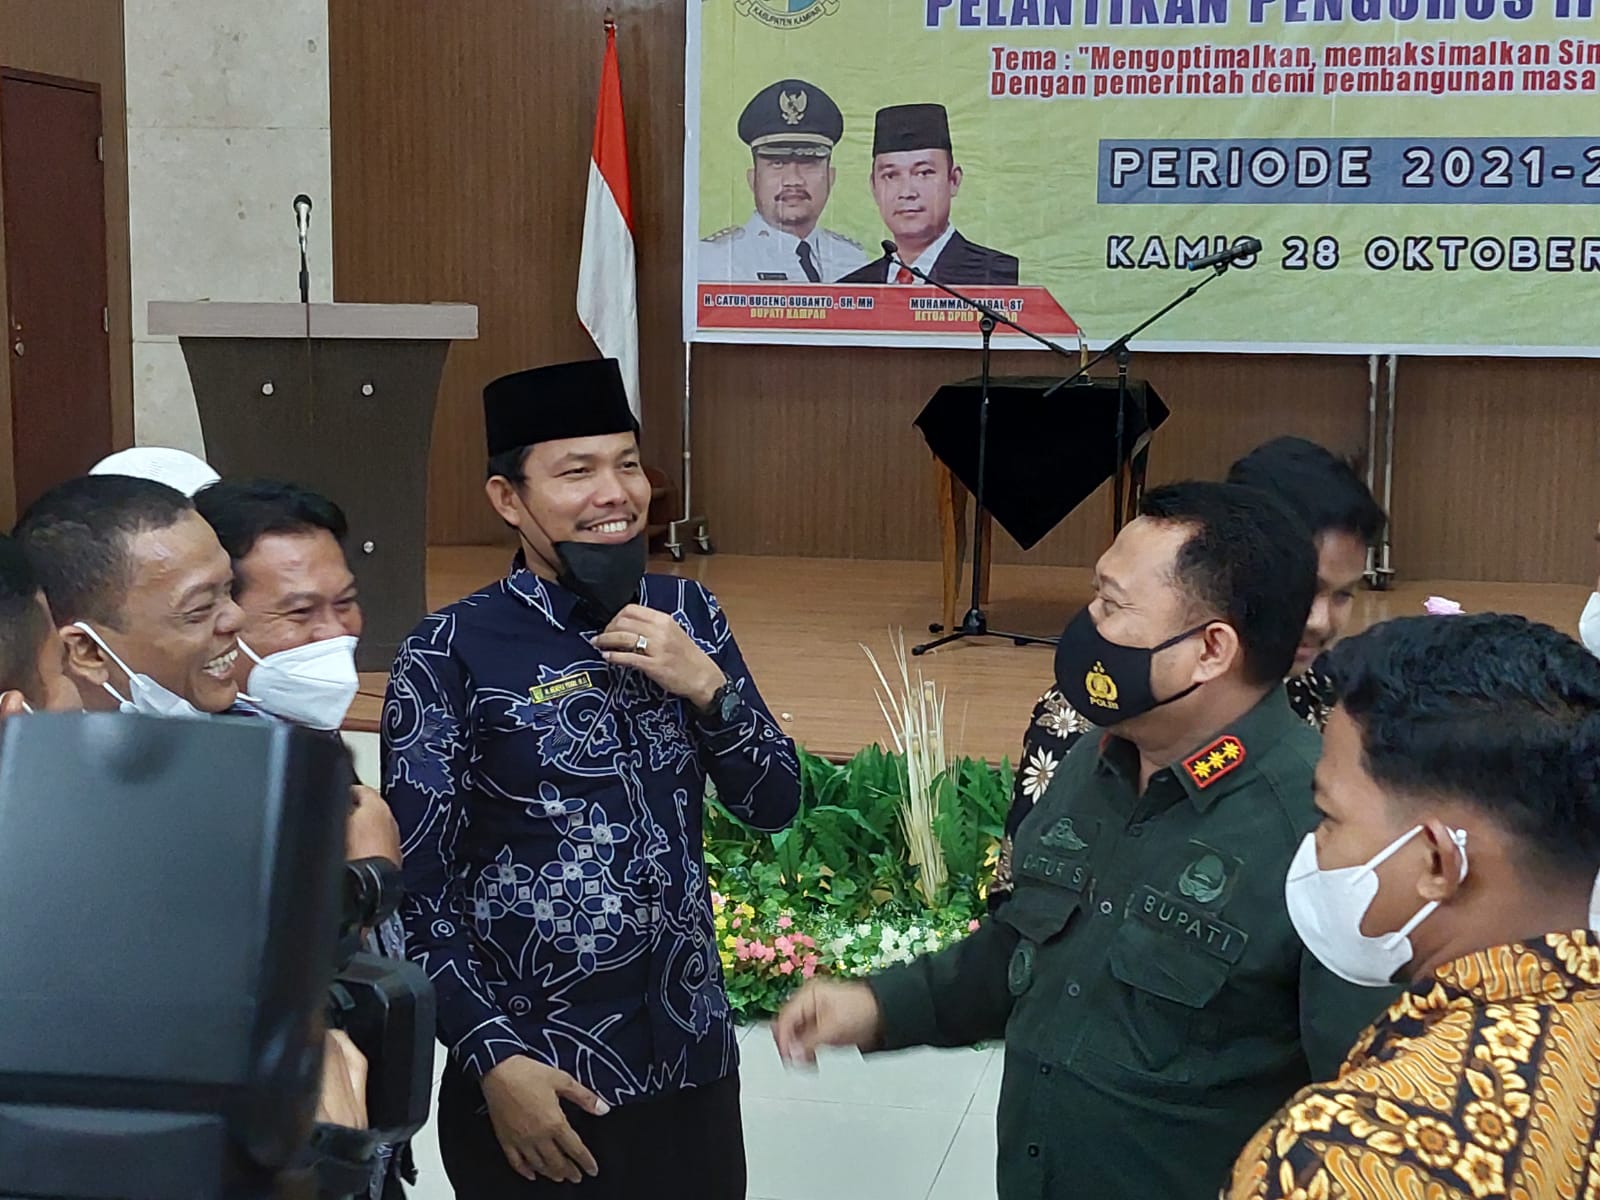 Hendra Yunal Harapkan Bupati Kampar Terus Menindaklanjuti Pembangunan Asrama IPMK Jakarta